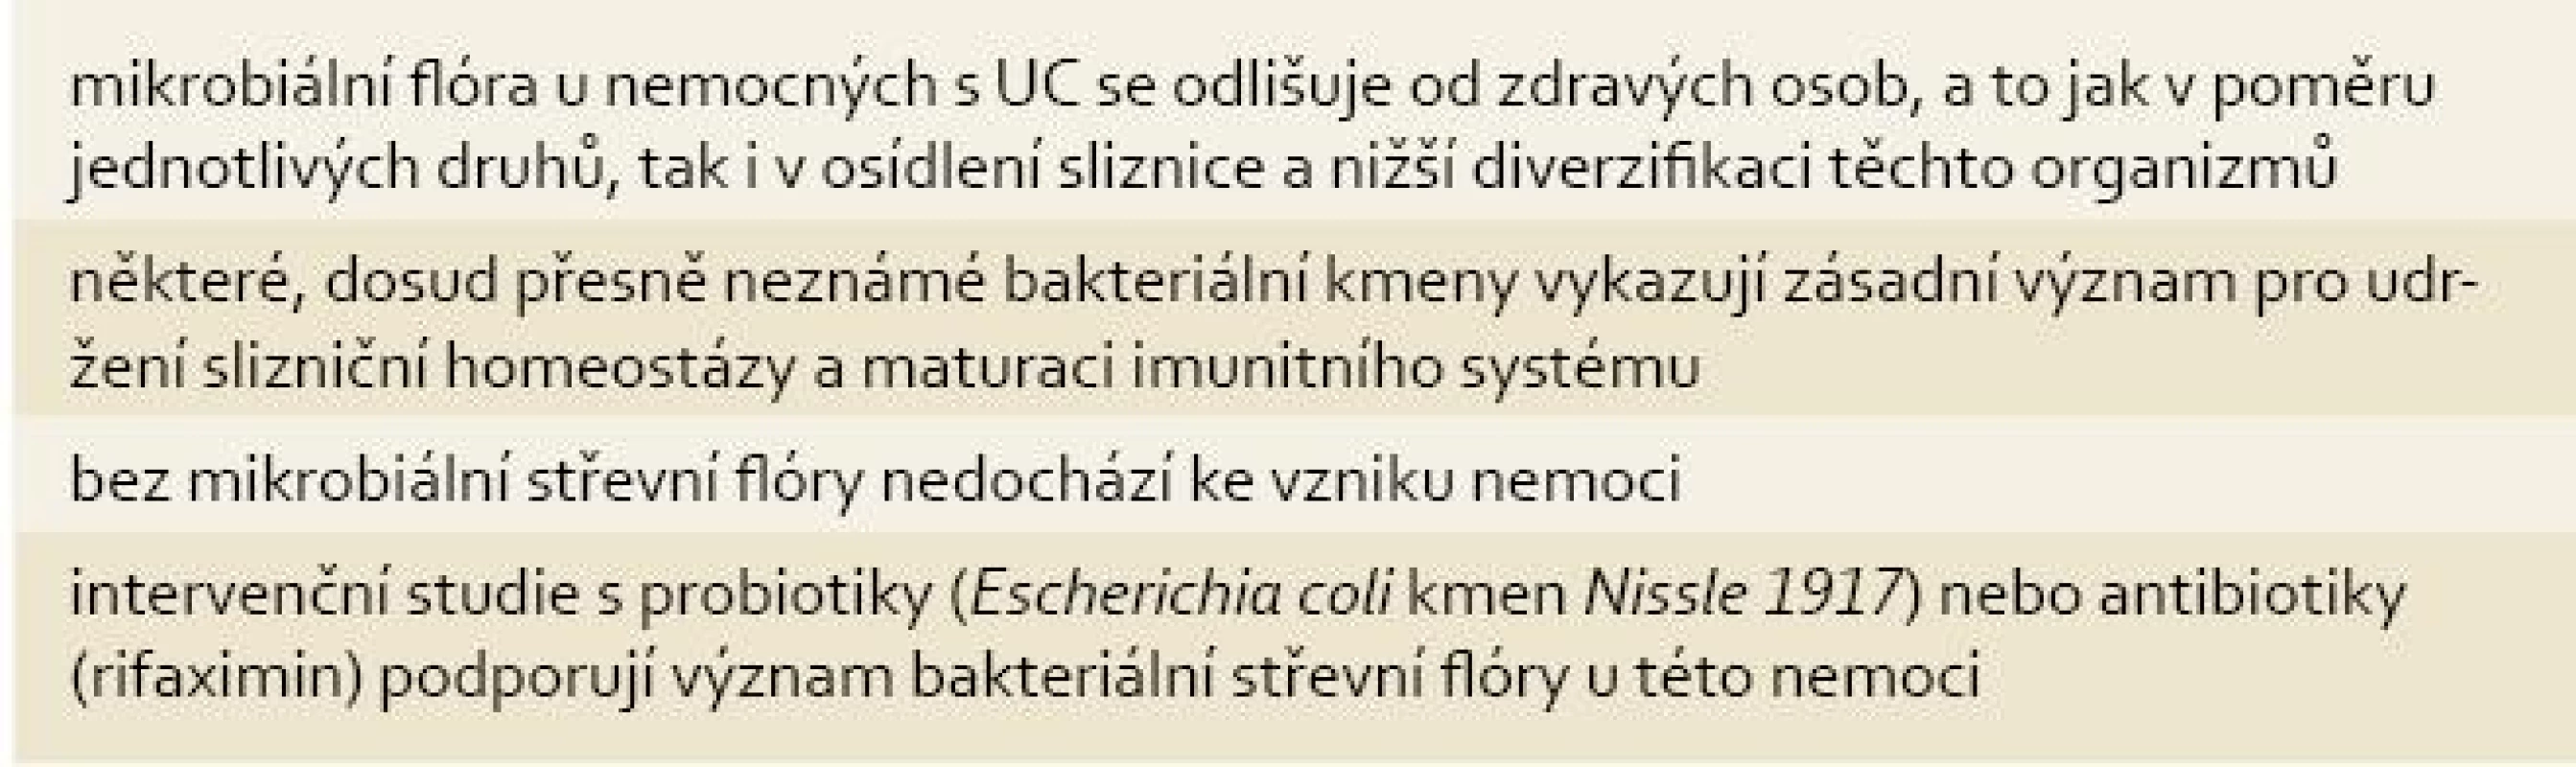 Význam mikrobiální střevní flóry v etiologii UC.
Tab. 2. Role of intestinal microbionta in aetiology of UC.